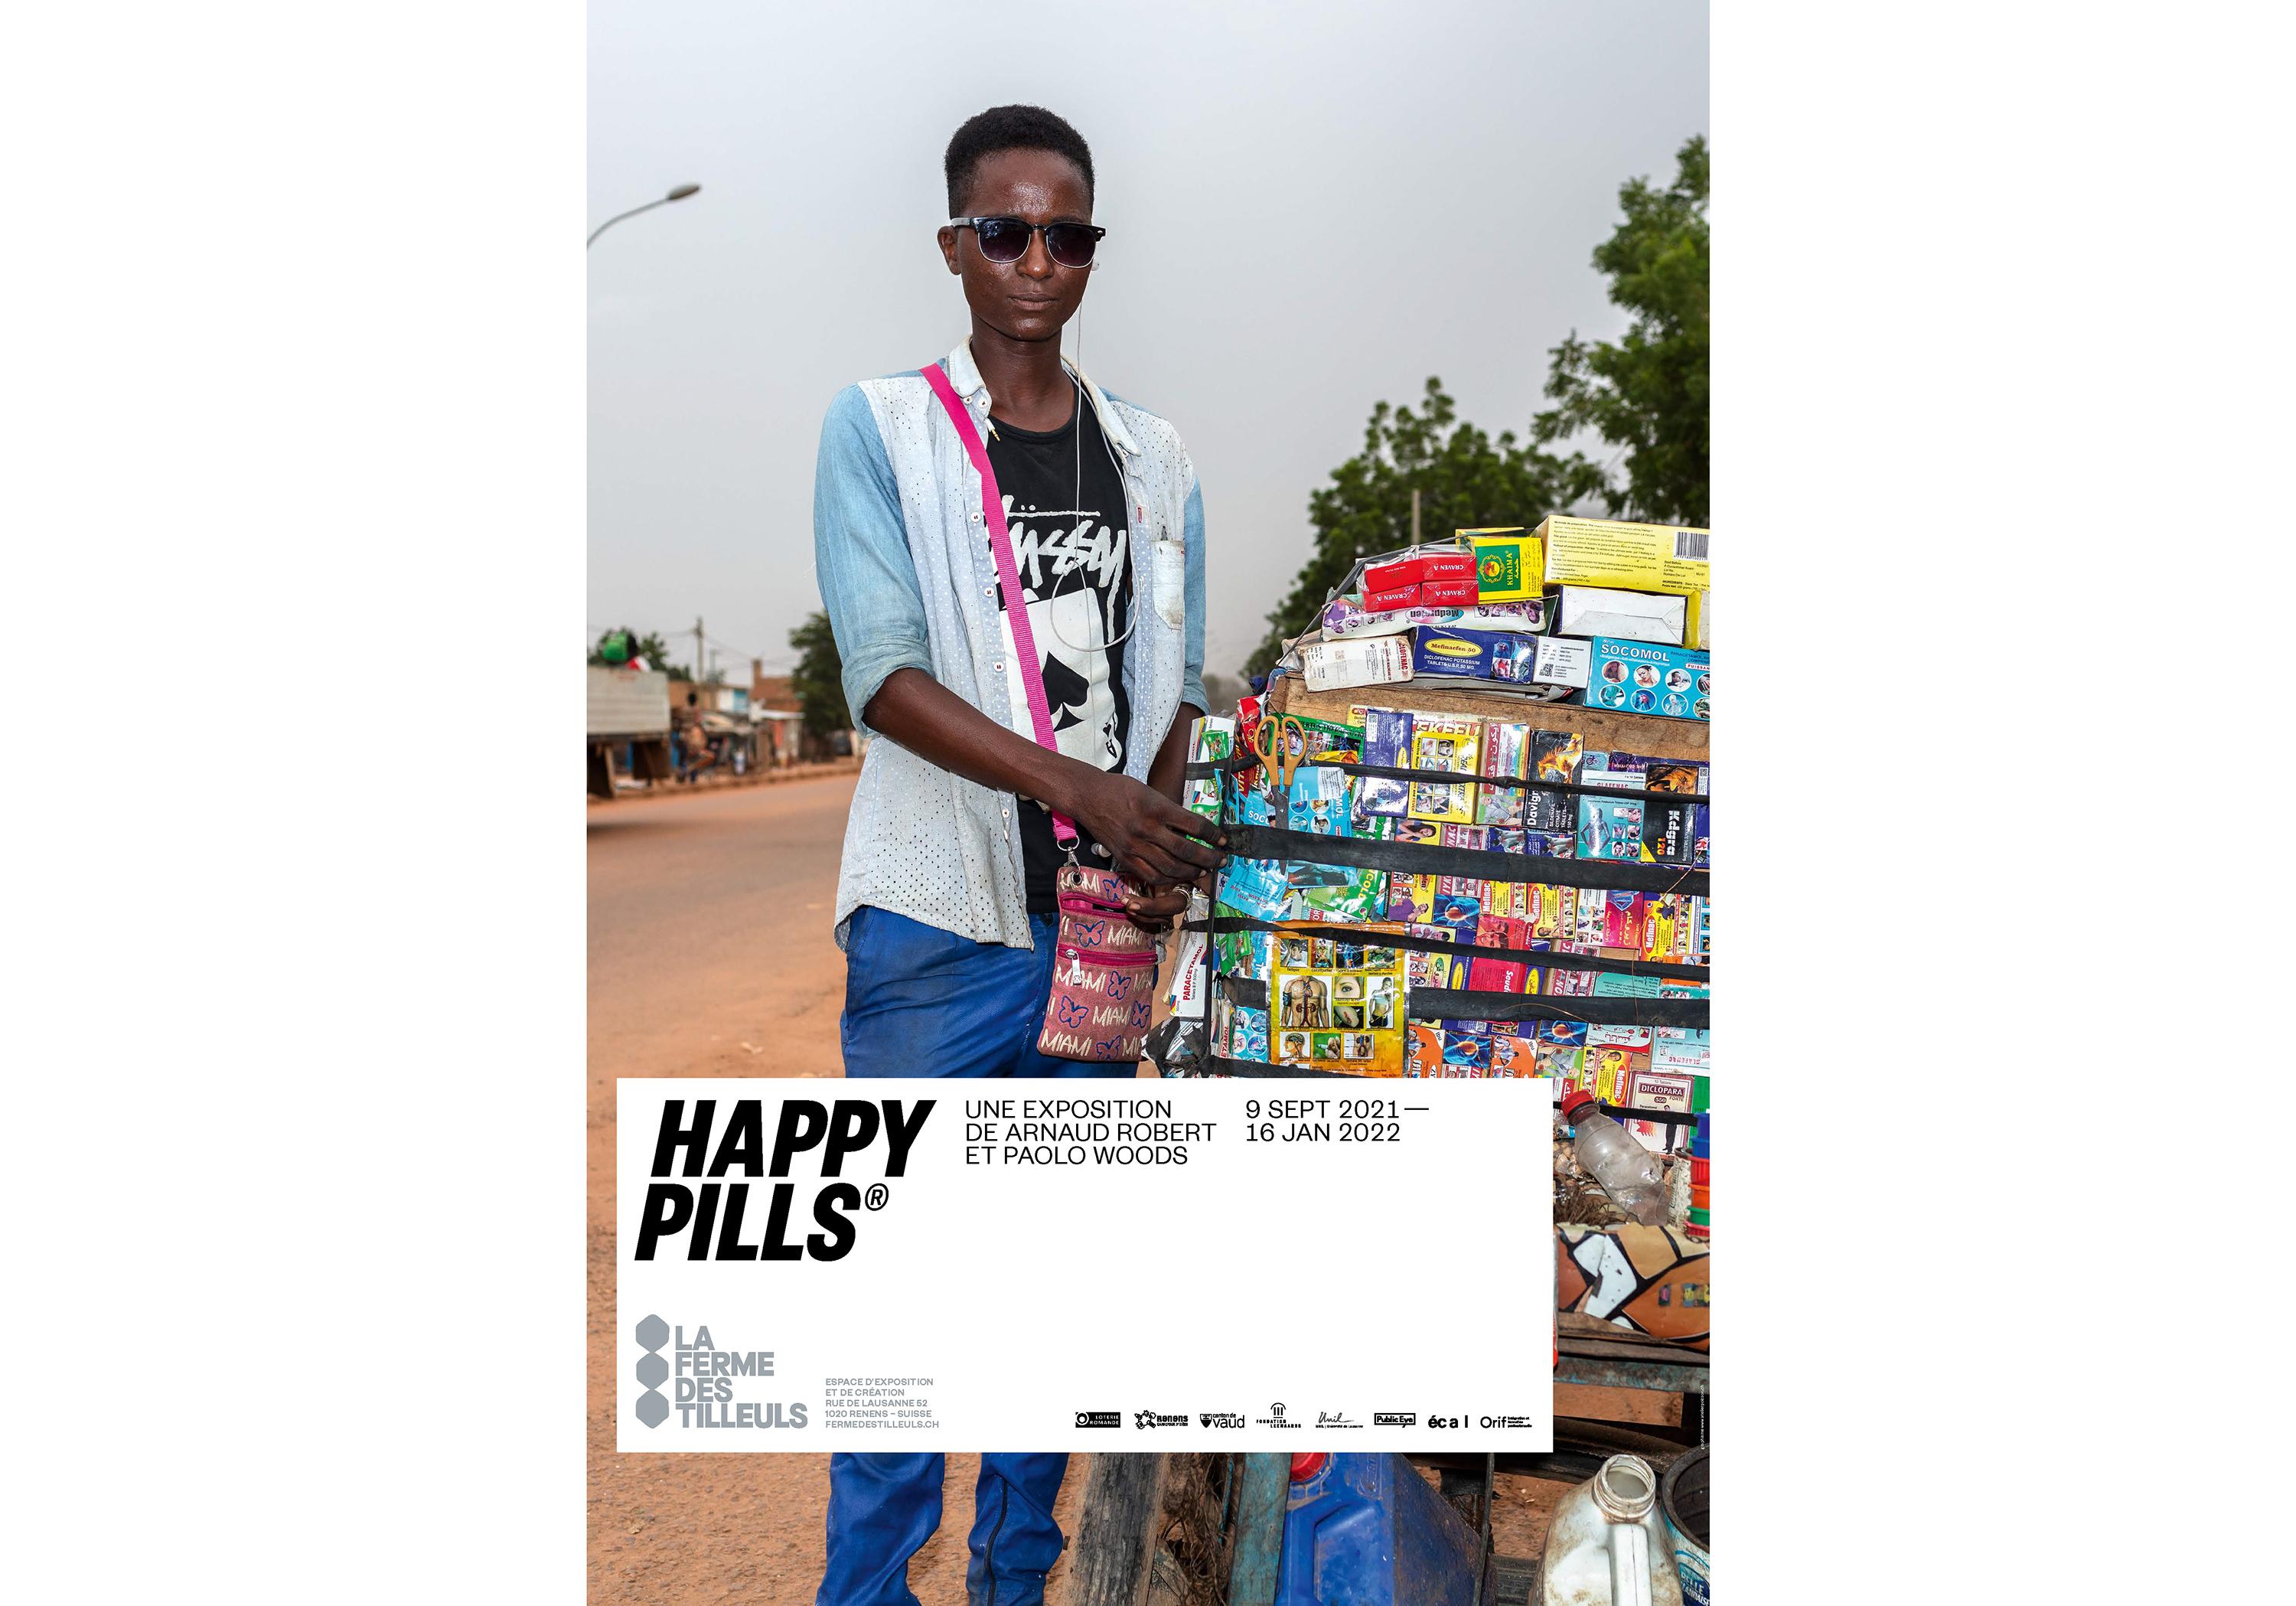 L'affiche de l'exposition "Happy Pills". [La ferme des tilleuls]